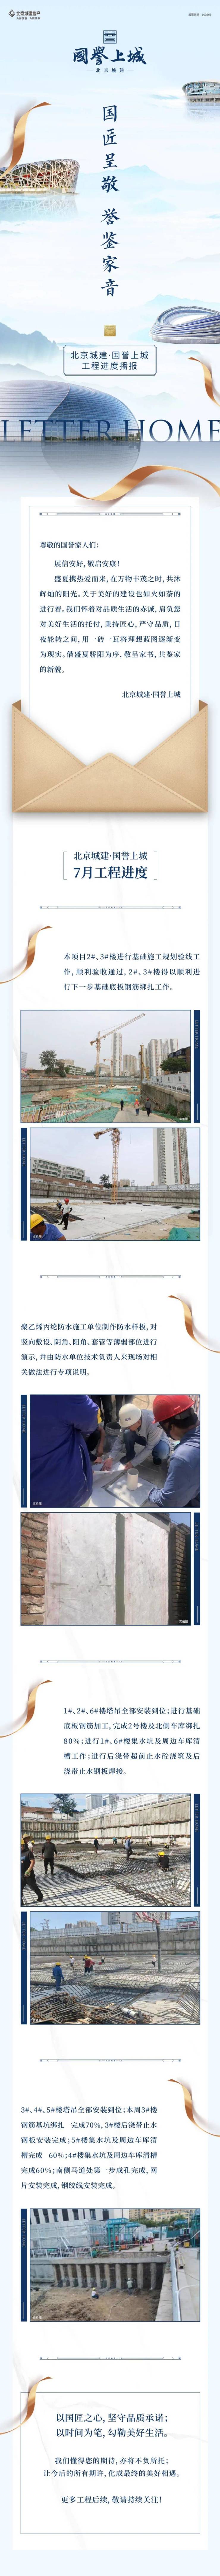 北京城建&middot;国誉上城|7月工程进度播报